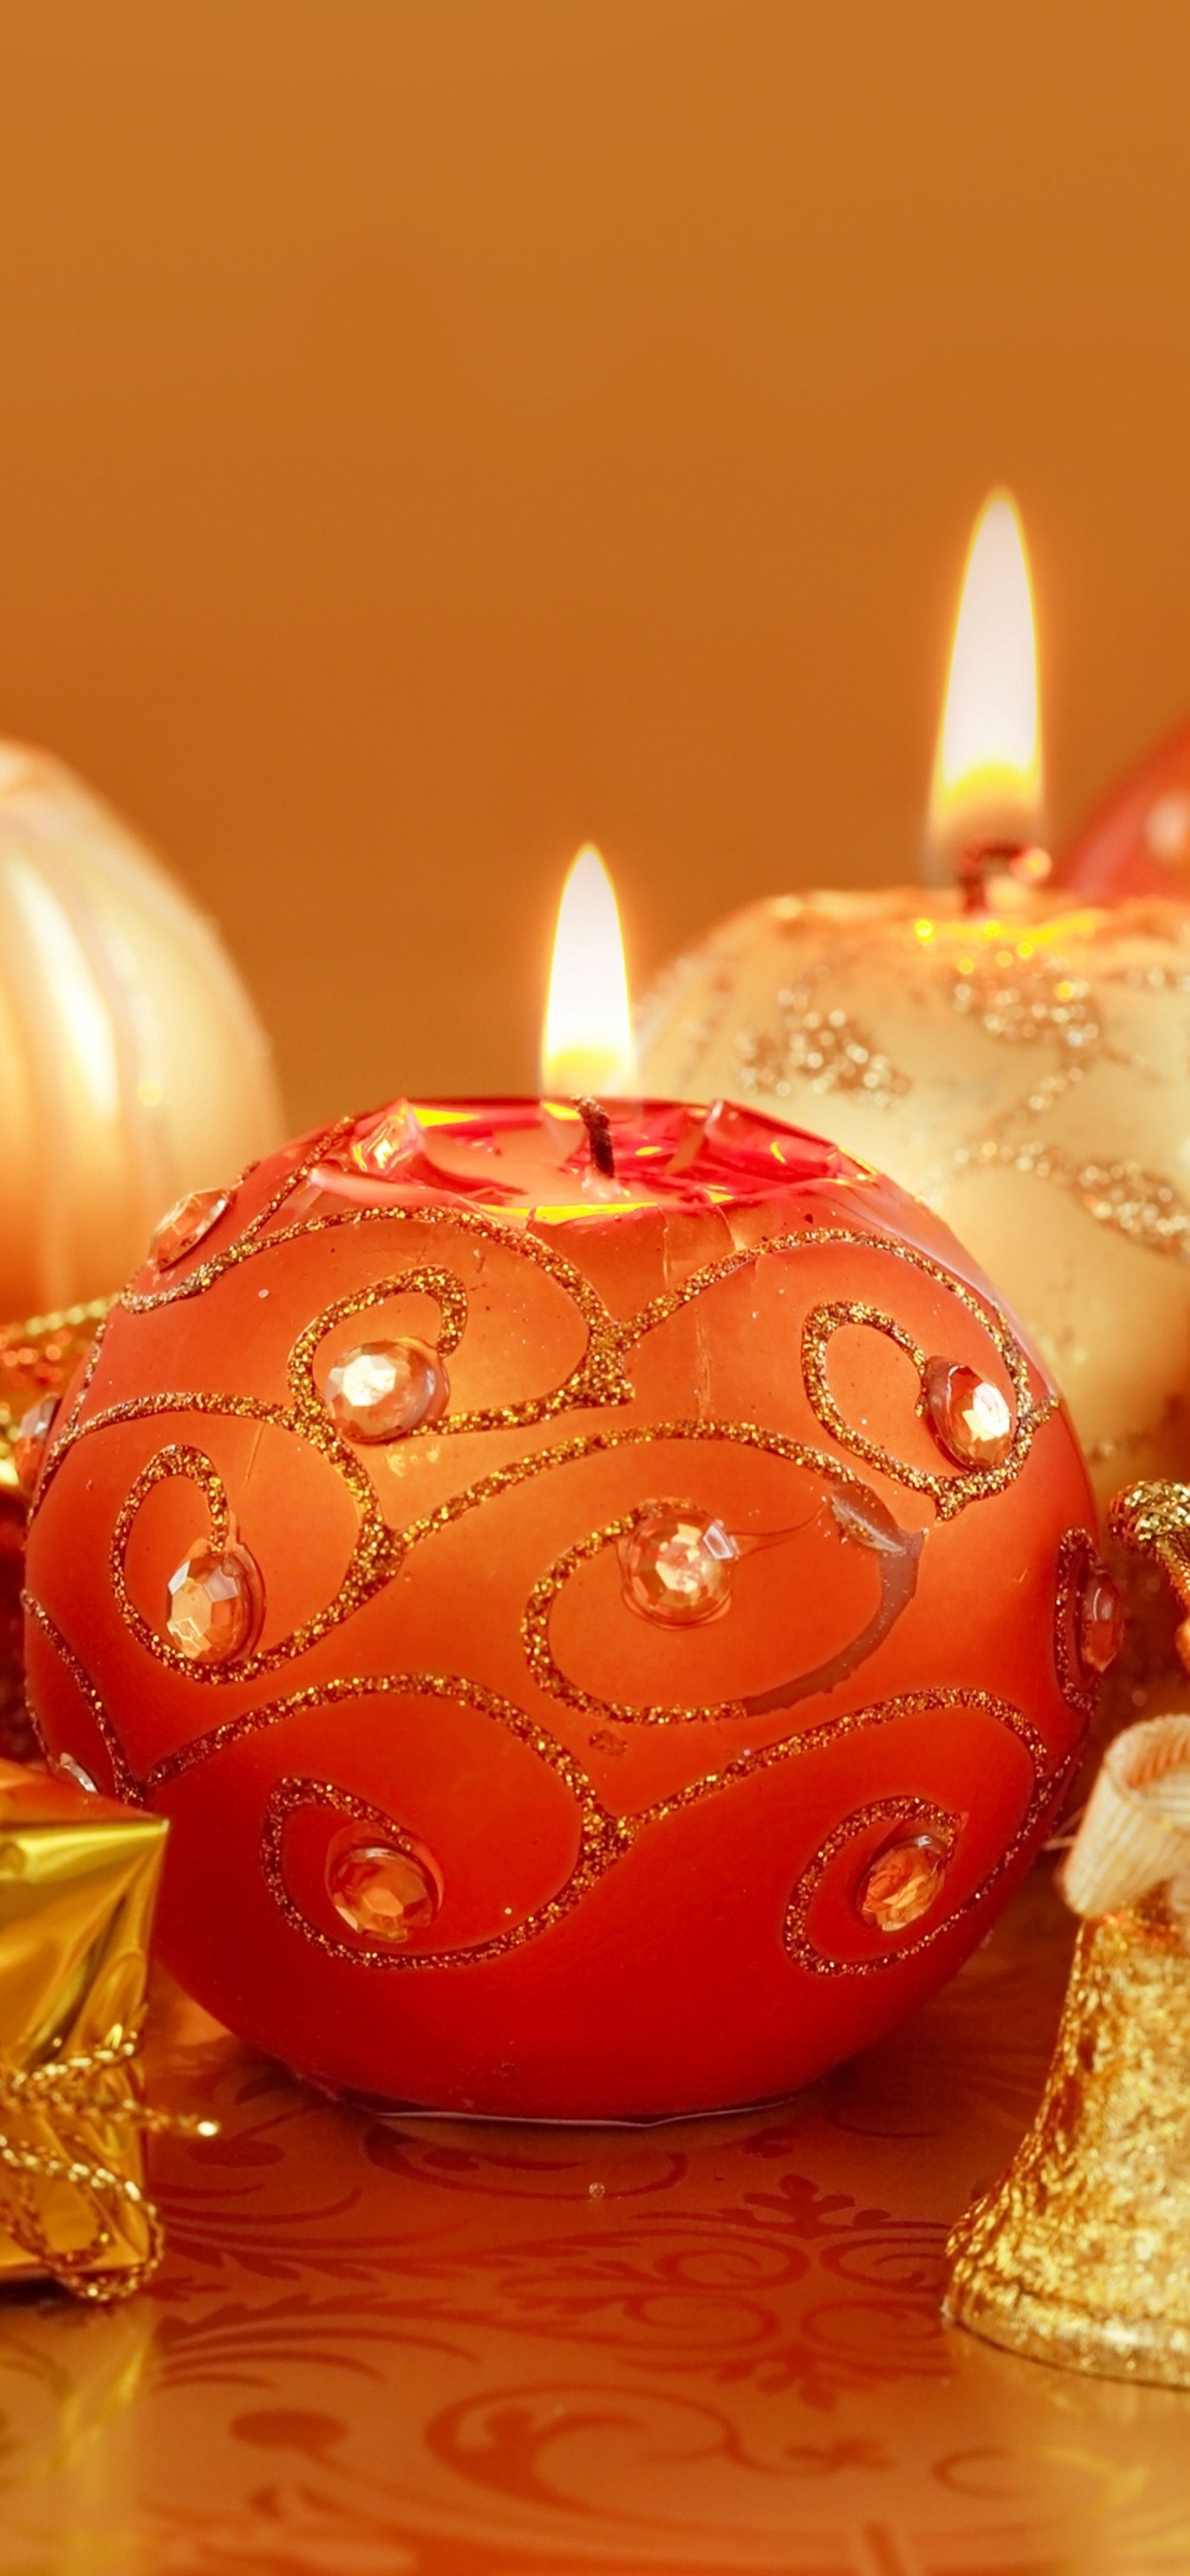 圣诞节那天, 新的一年, 仍然生活, 圣诞节的装饰品, 橙色 壁纸 1242x2688 允许